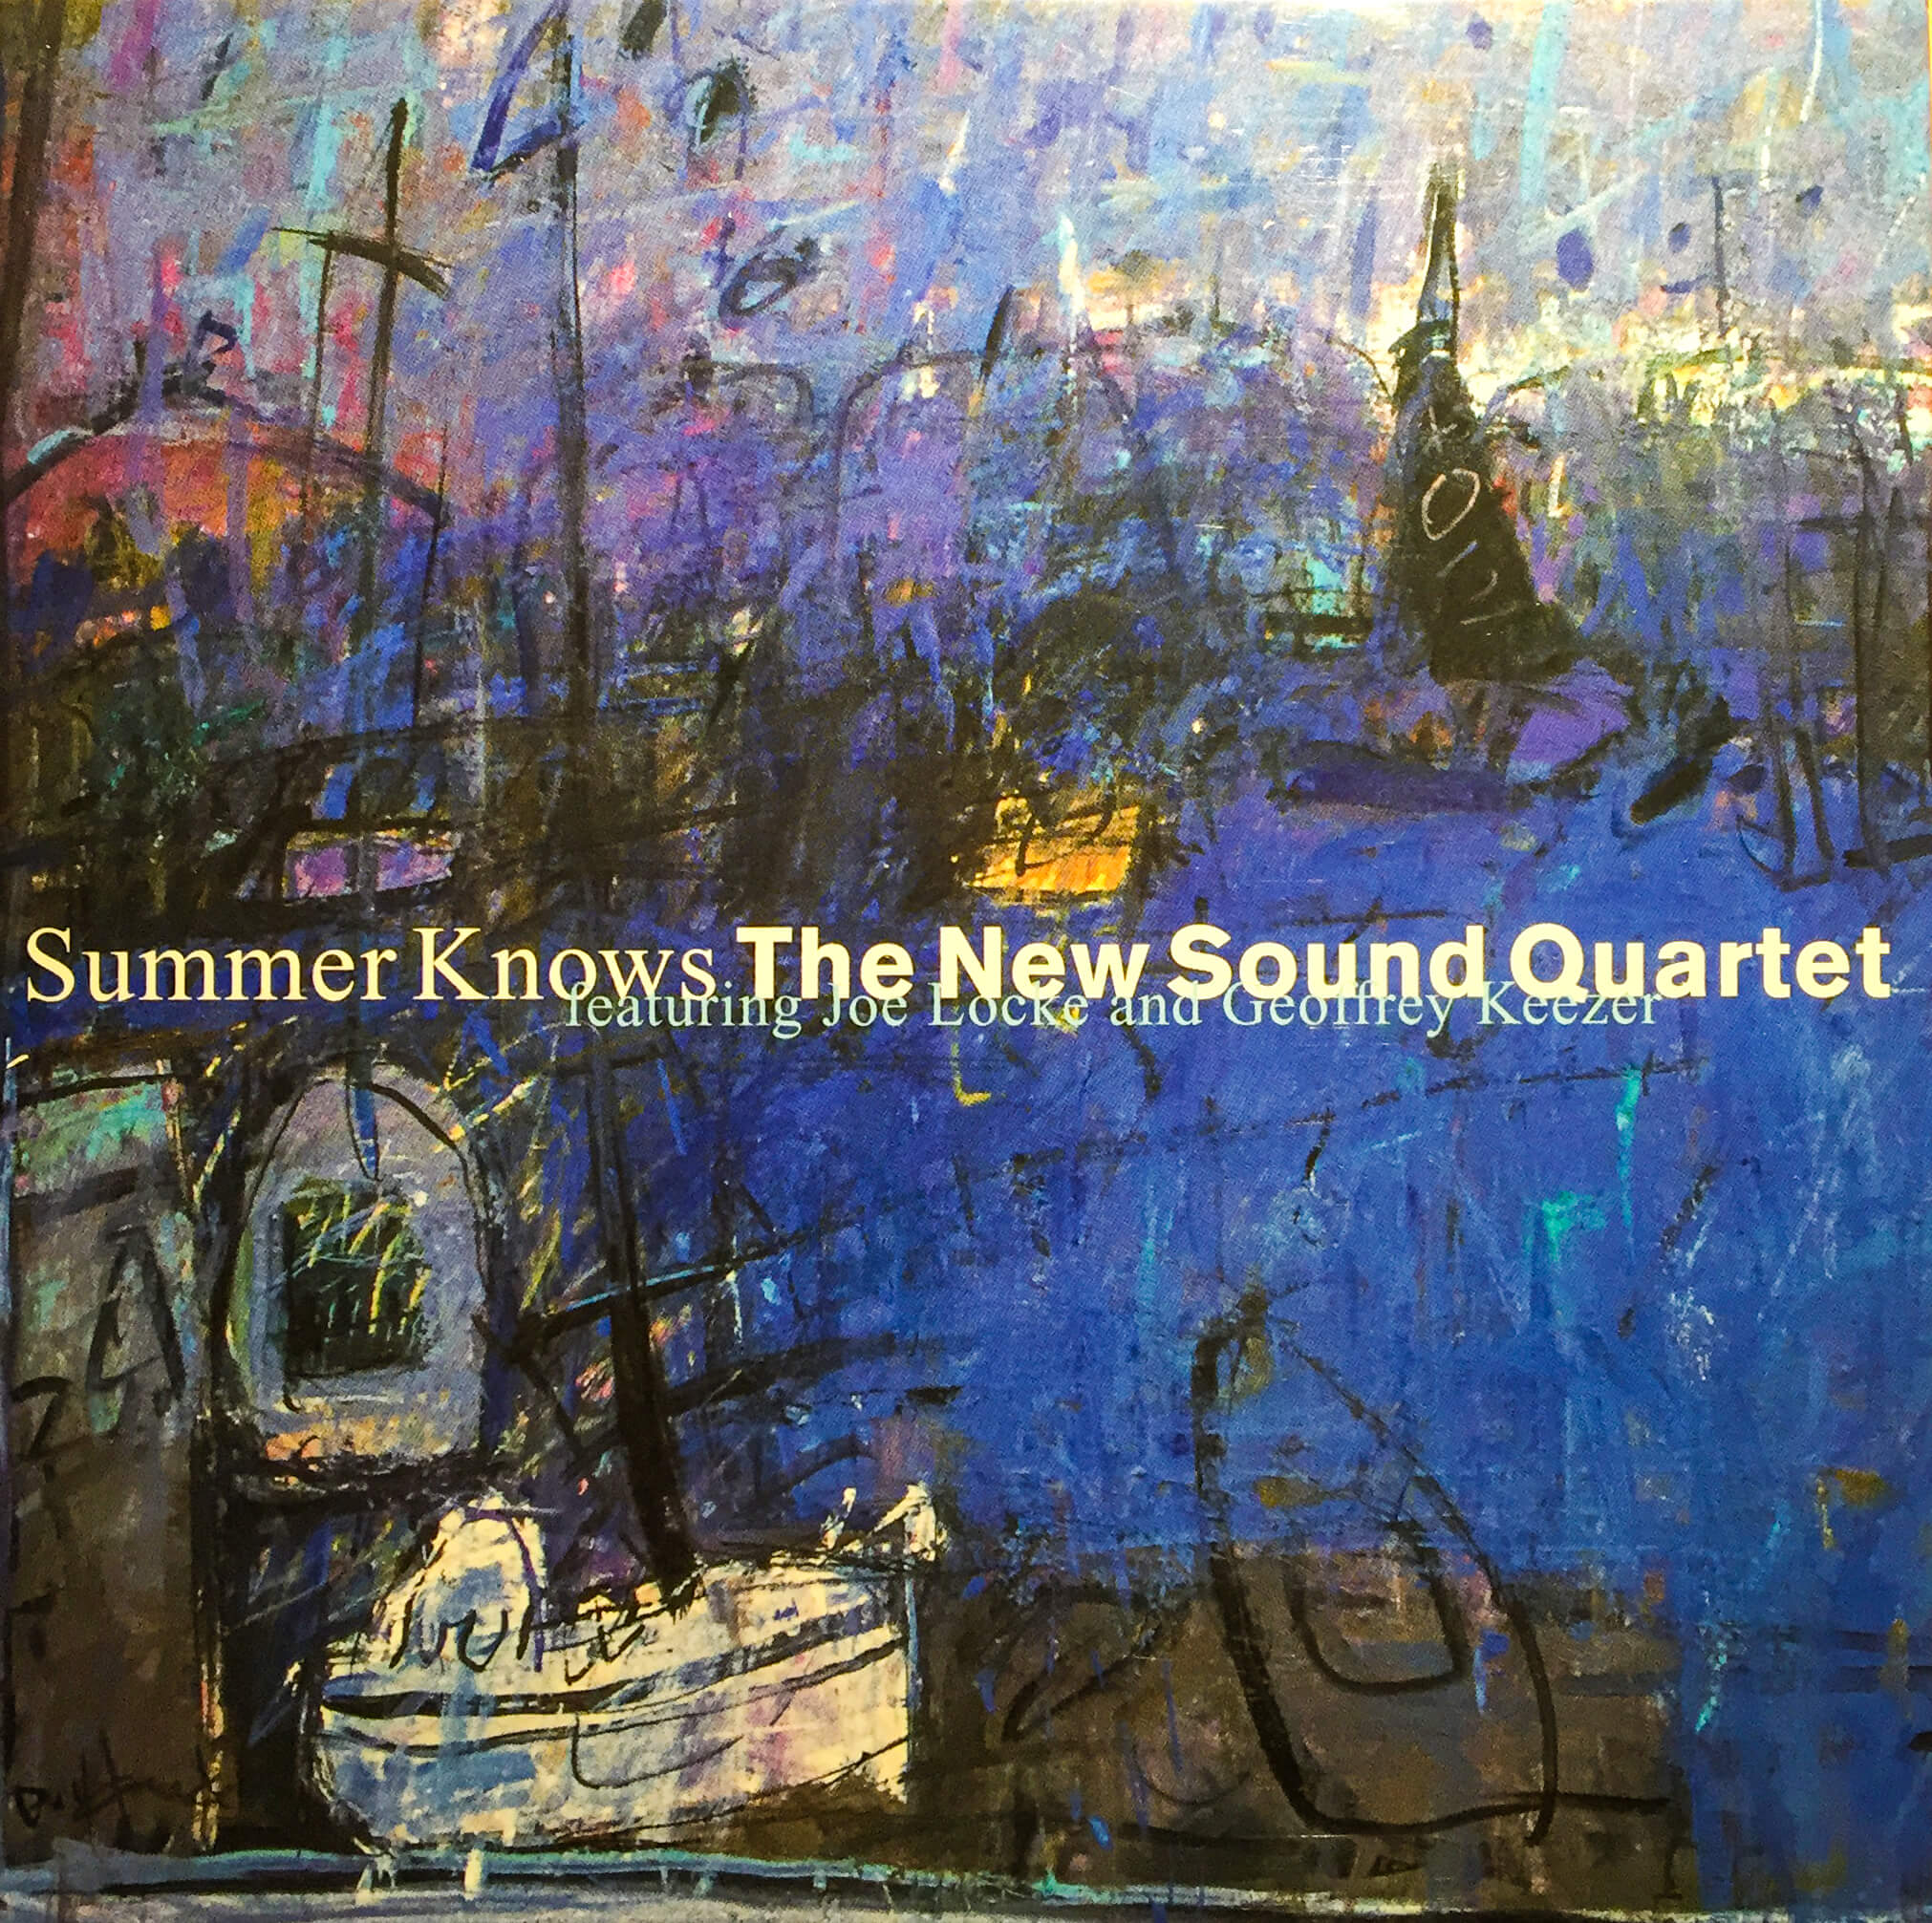 The New Sound Quartet with Joe Locke & Geoffrey Keezer 'The Summer Knows'